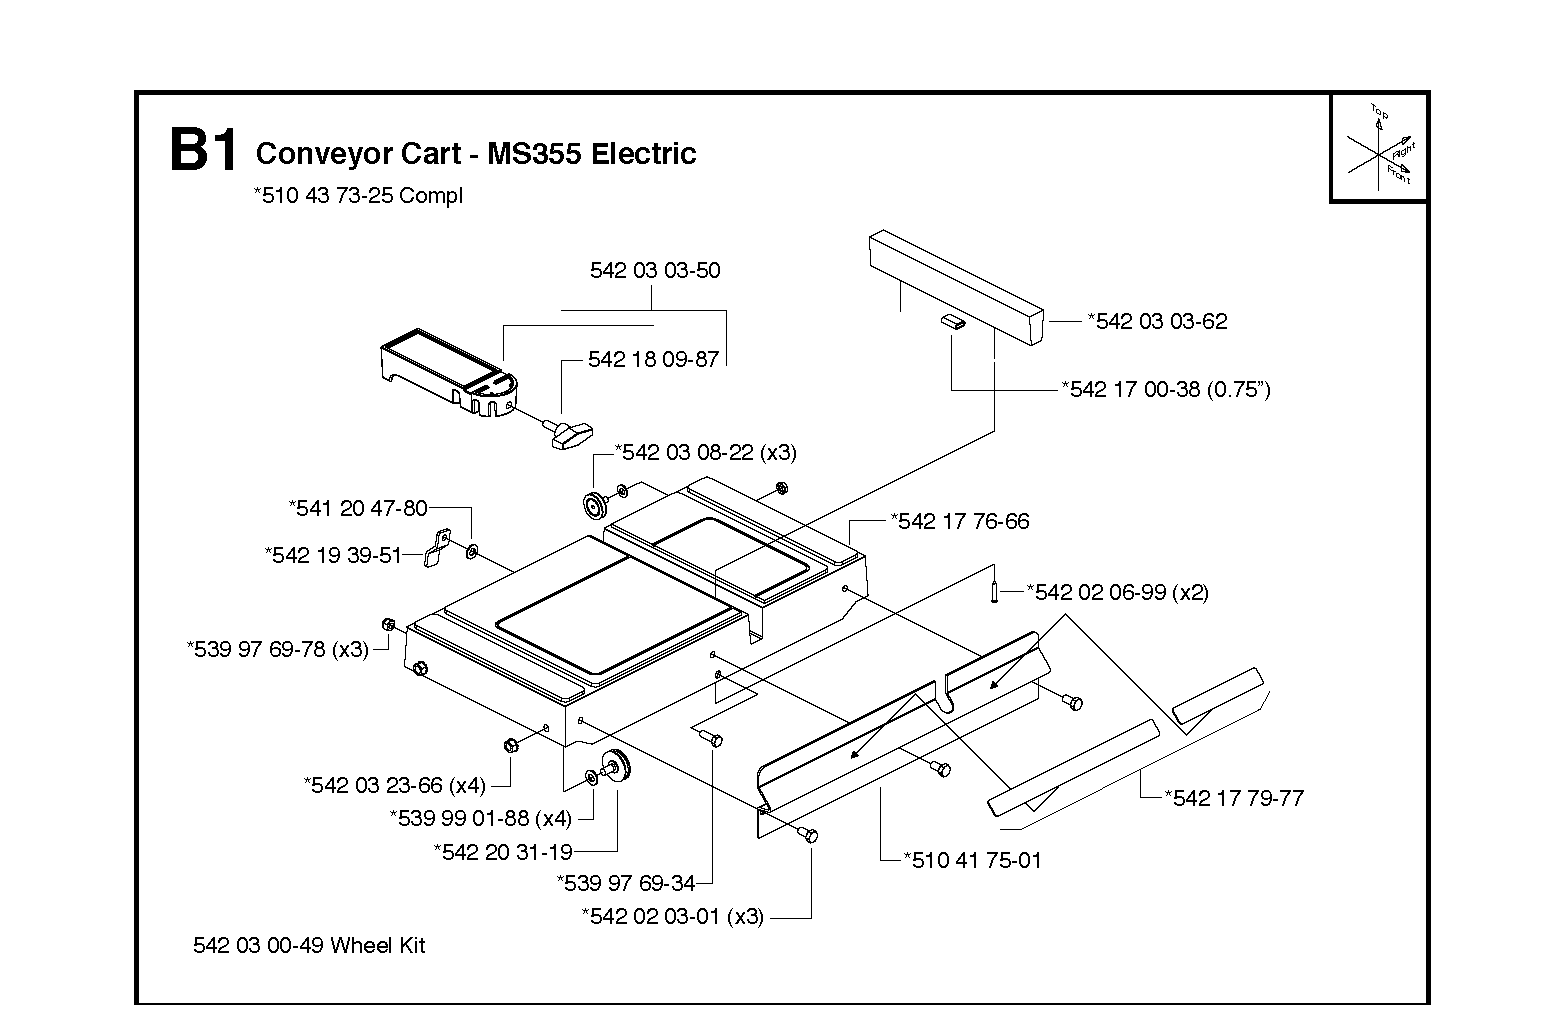 Conveyor cart (B)